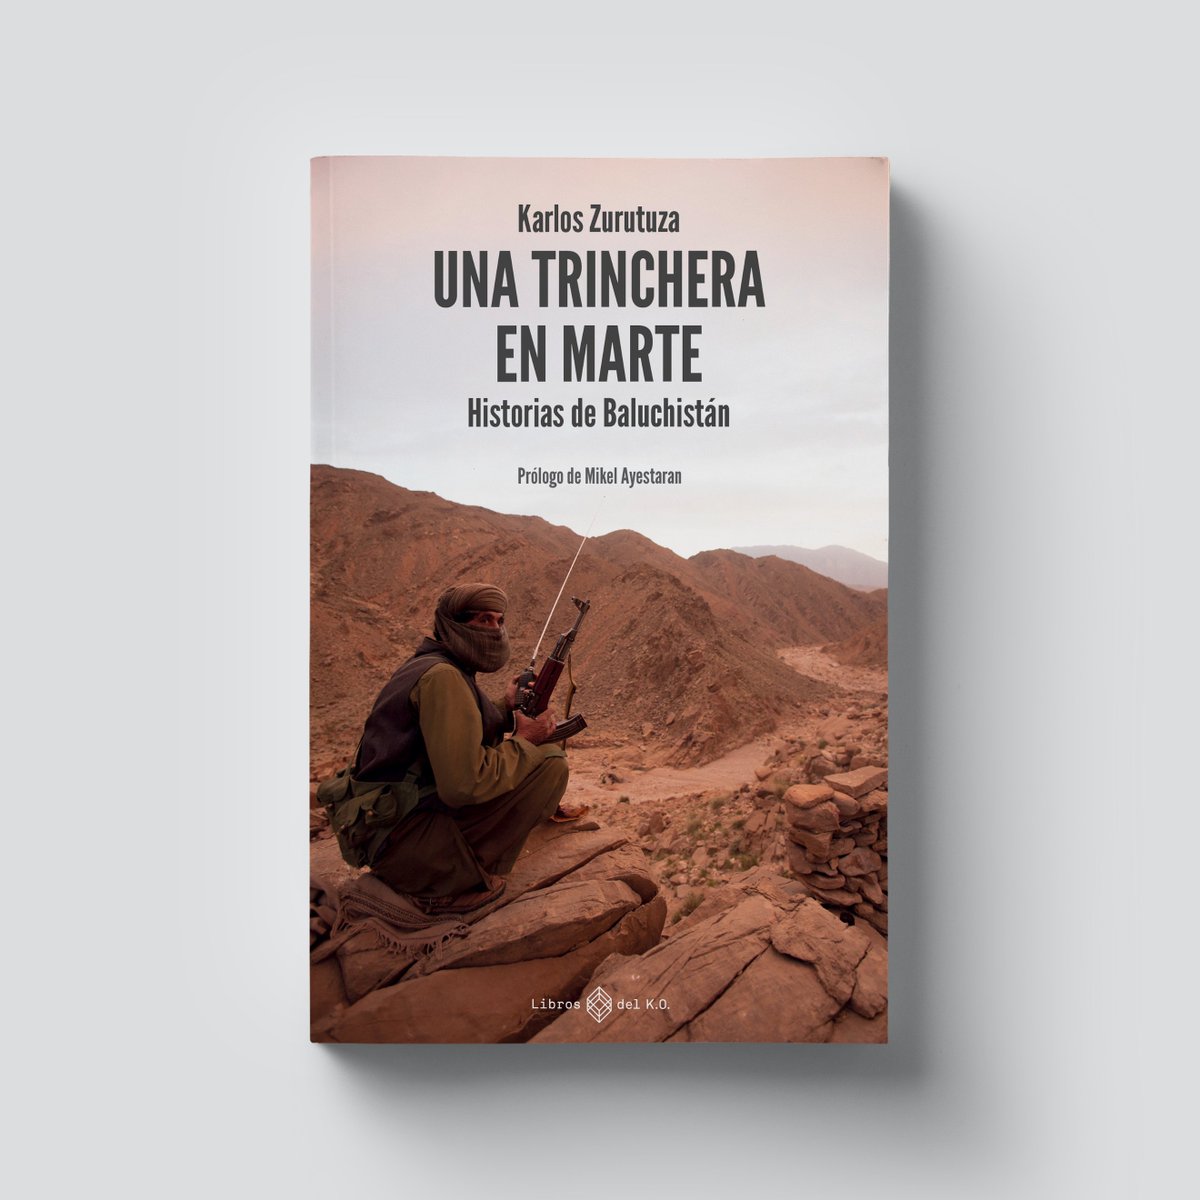 🌏El 22 de abril lanzamos 'Una trinchera en Marte', de @karloszurutuza. El único libro publicado en español sobre Baluchistán, una zona desconocida que, sin embargo, es clave para entender todo lo que ocurre en Oriente Medio y Asia Central. 

librosdelko.com/products/una-t…